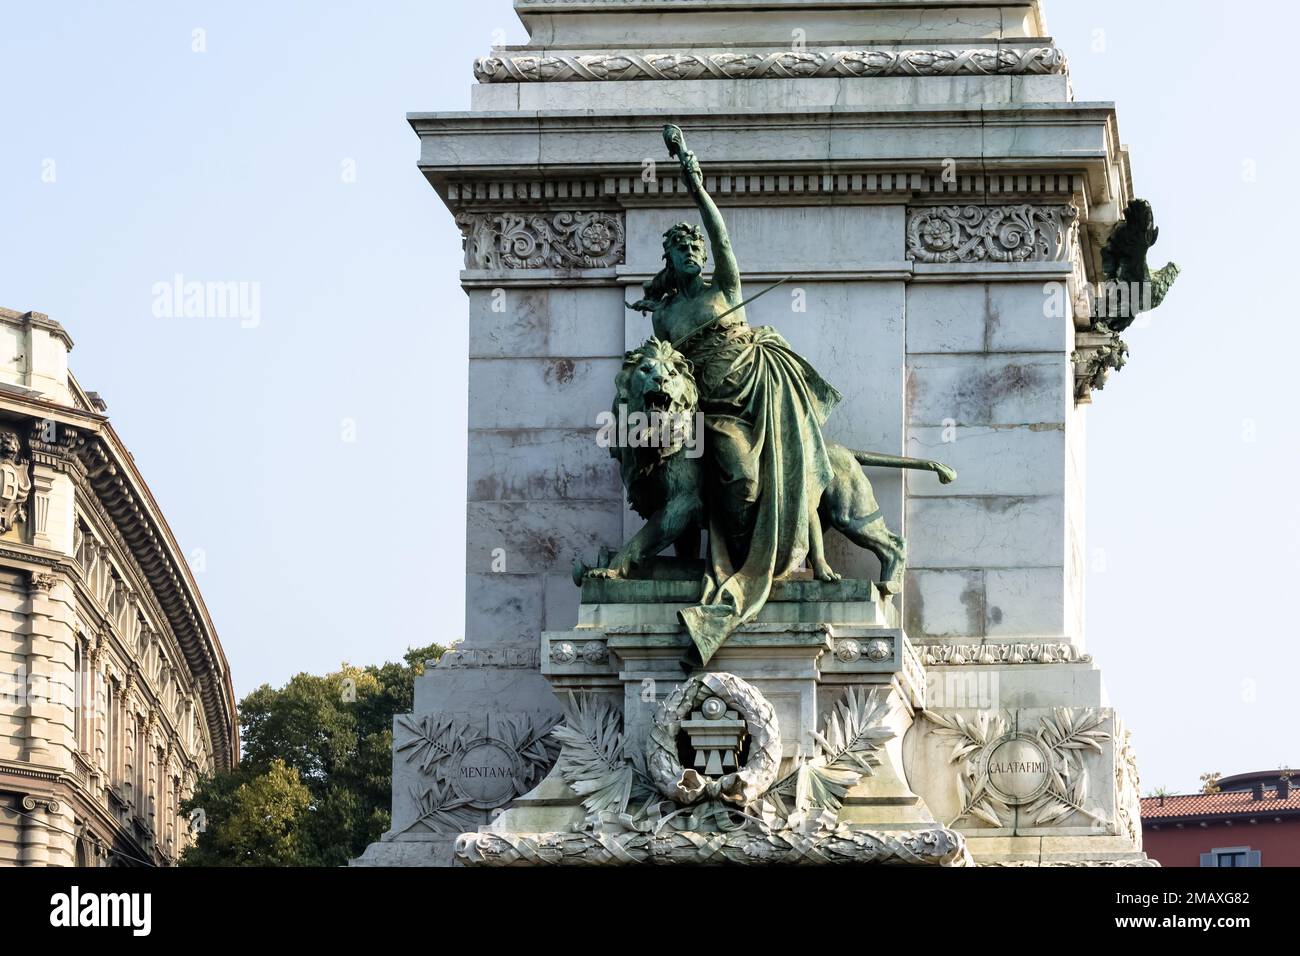 Particolare architettonico del monumento a Milano, a Giuseppe Garibaldi, generale italiano che contribuì all'unificazione italiana Foto Stock